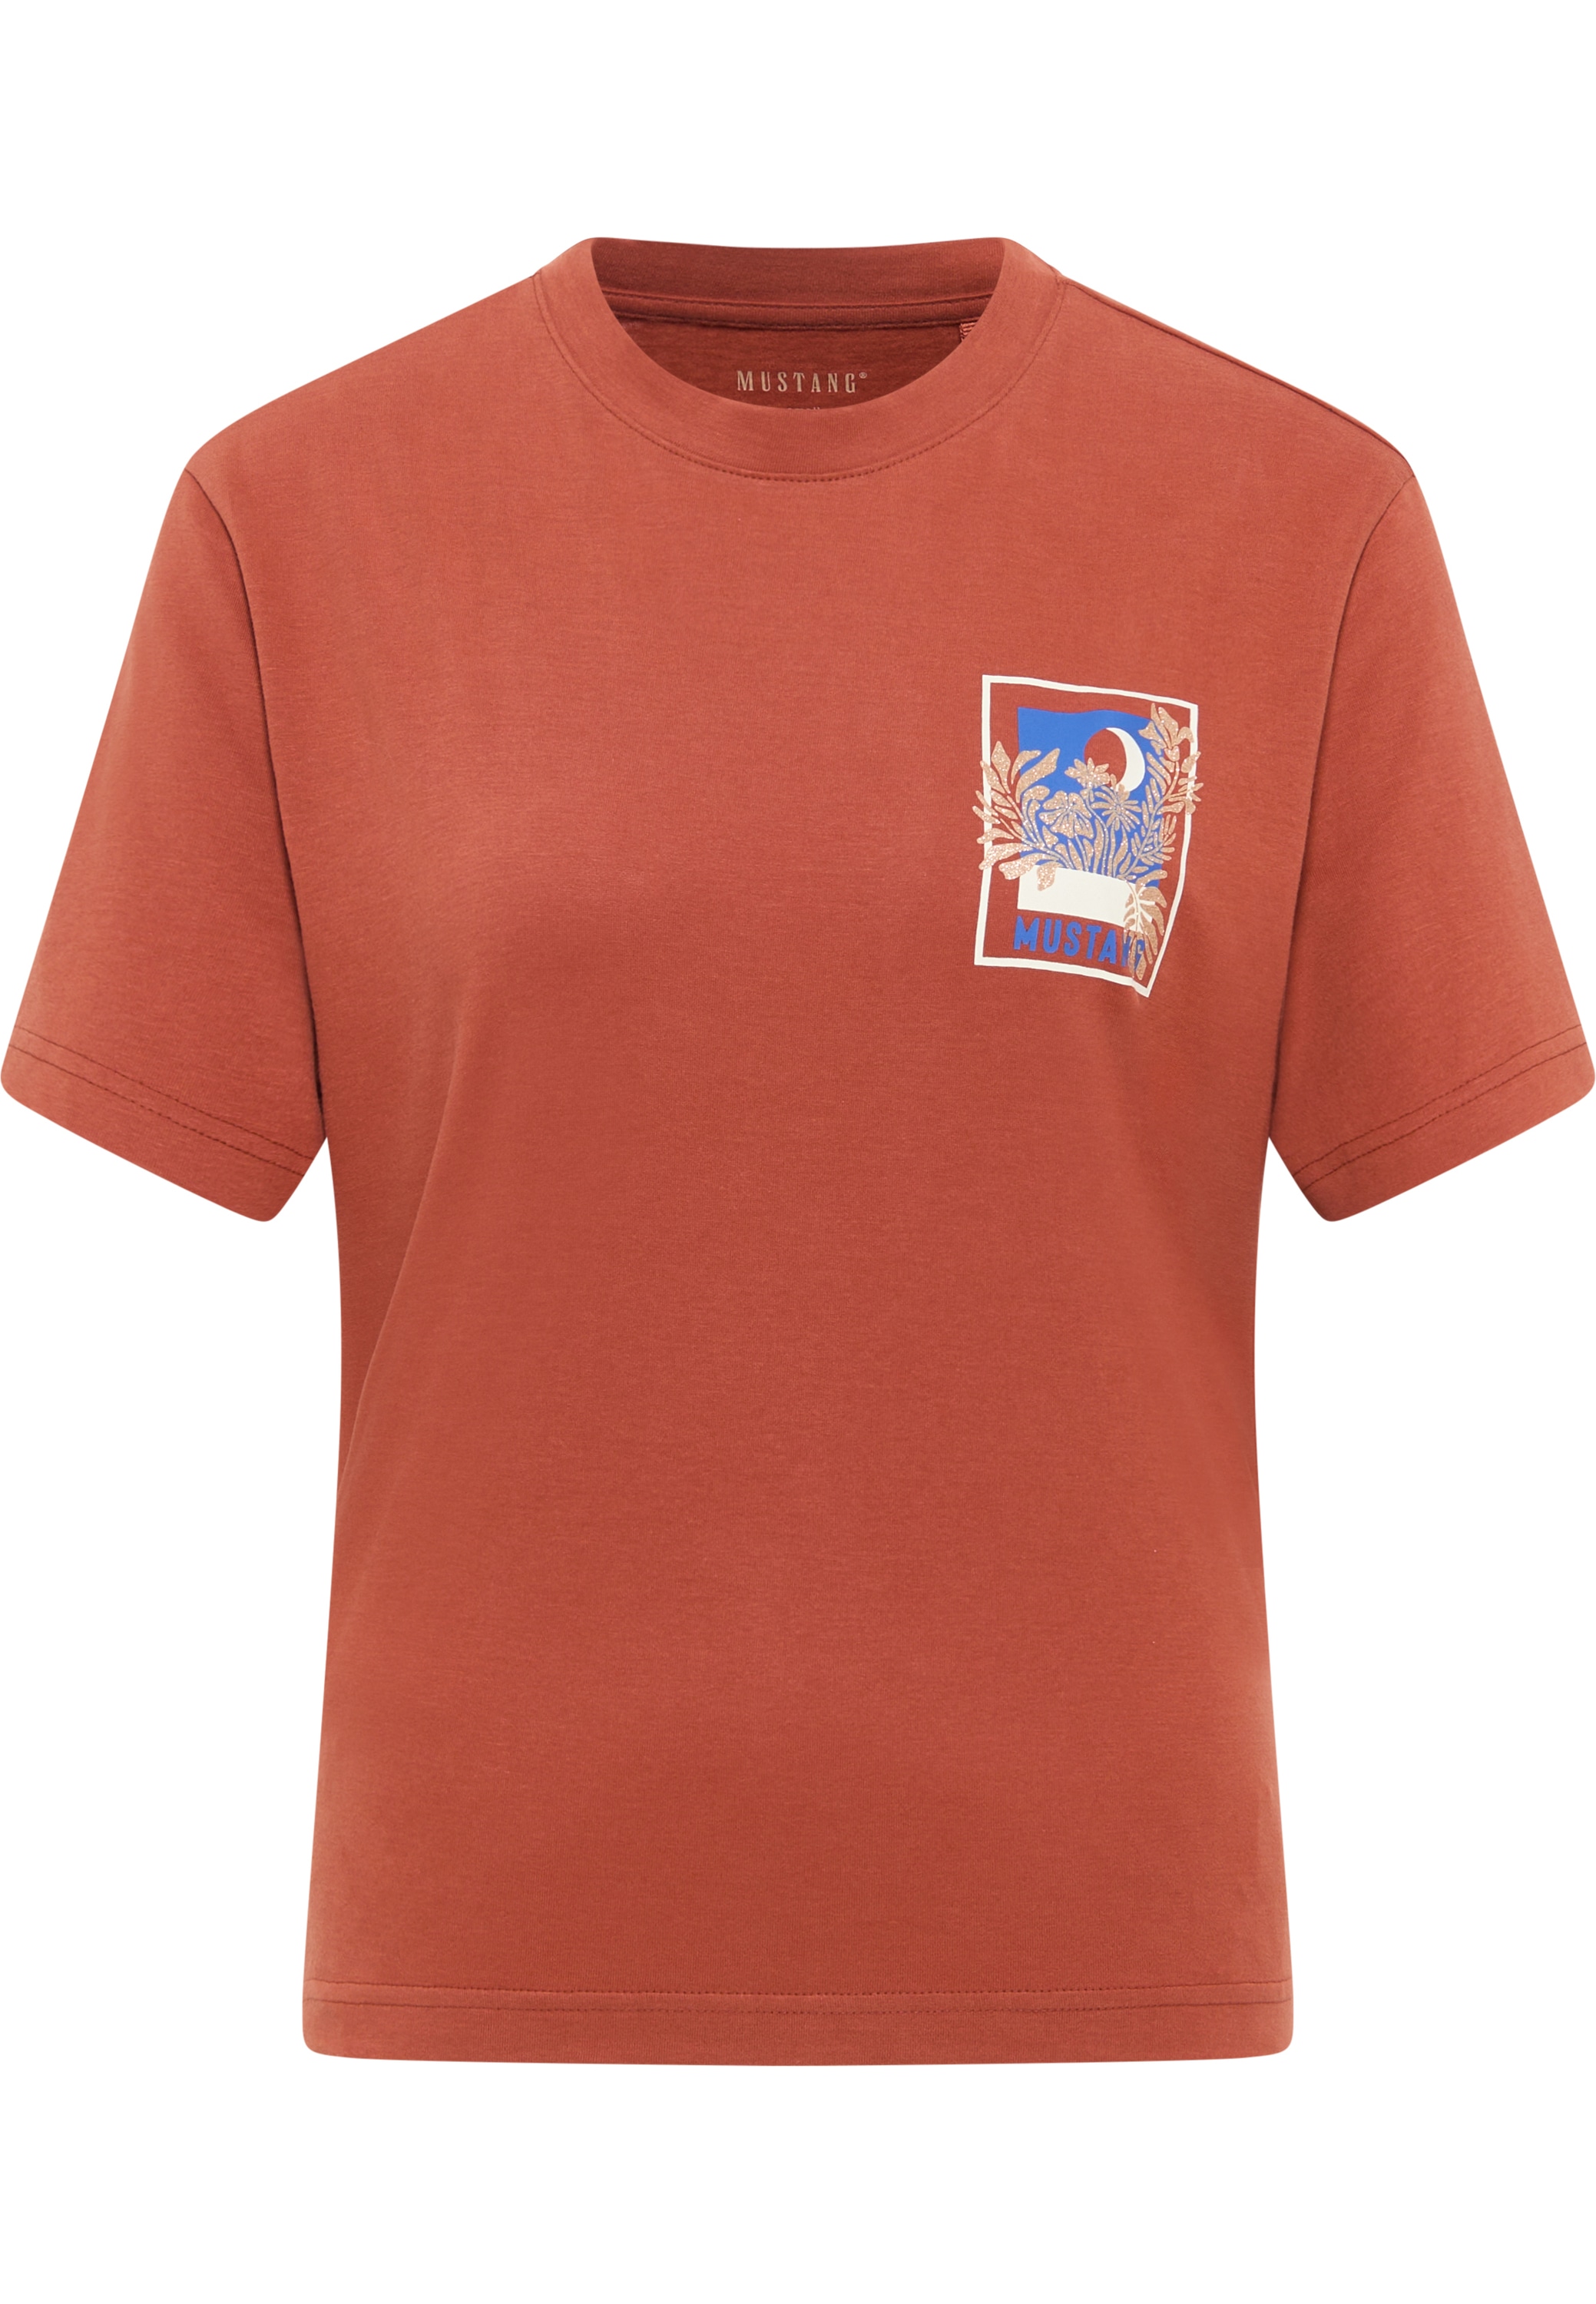 MUSTANG Kurzarmshirt online kaufen »T-Shirt«